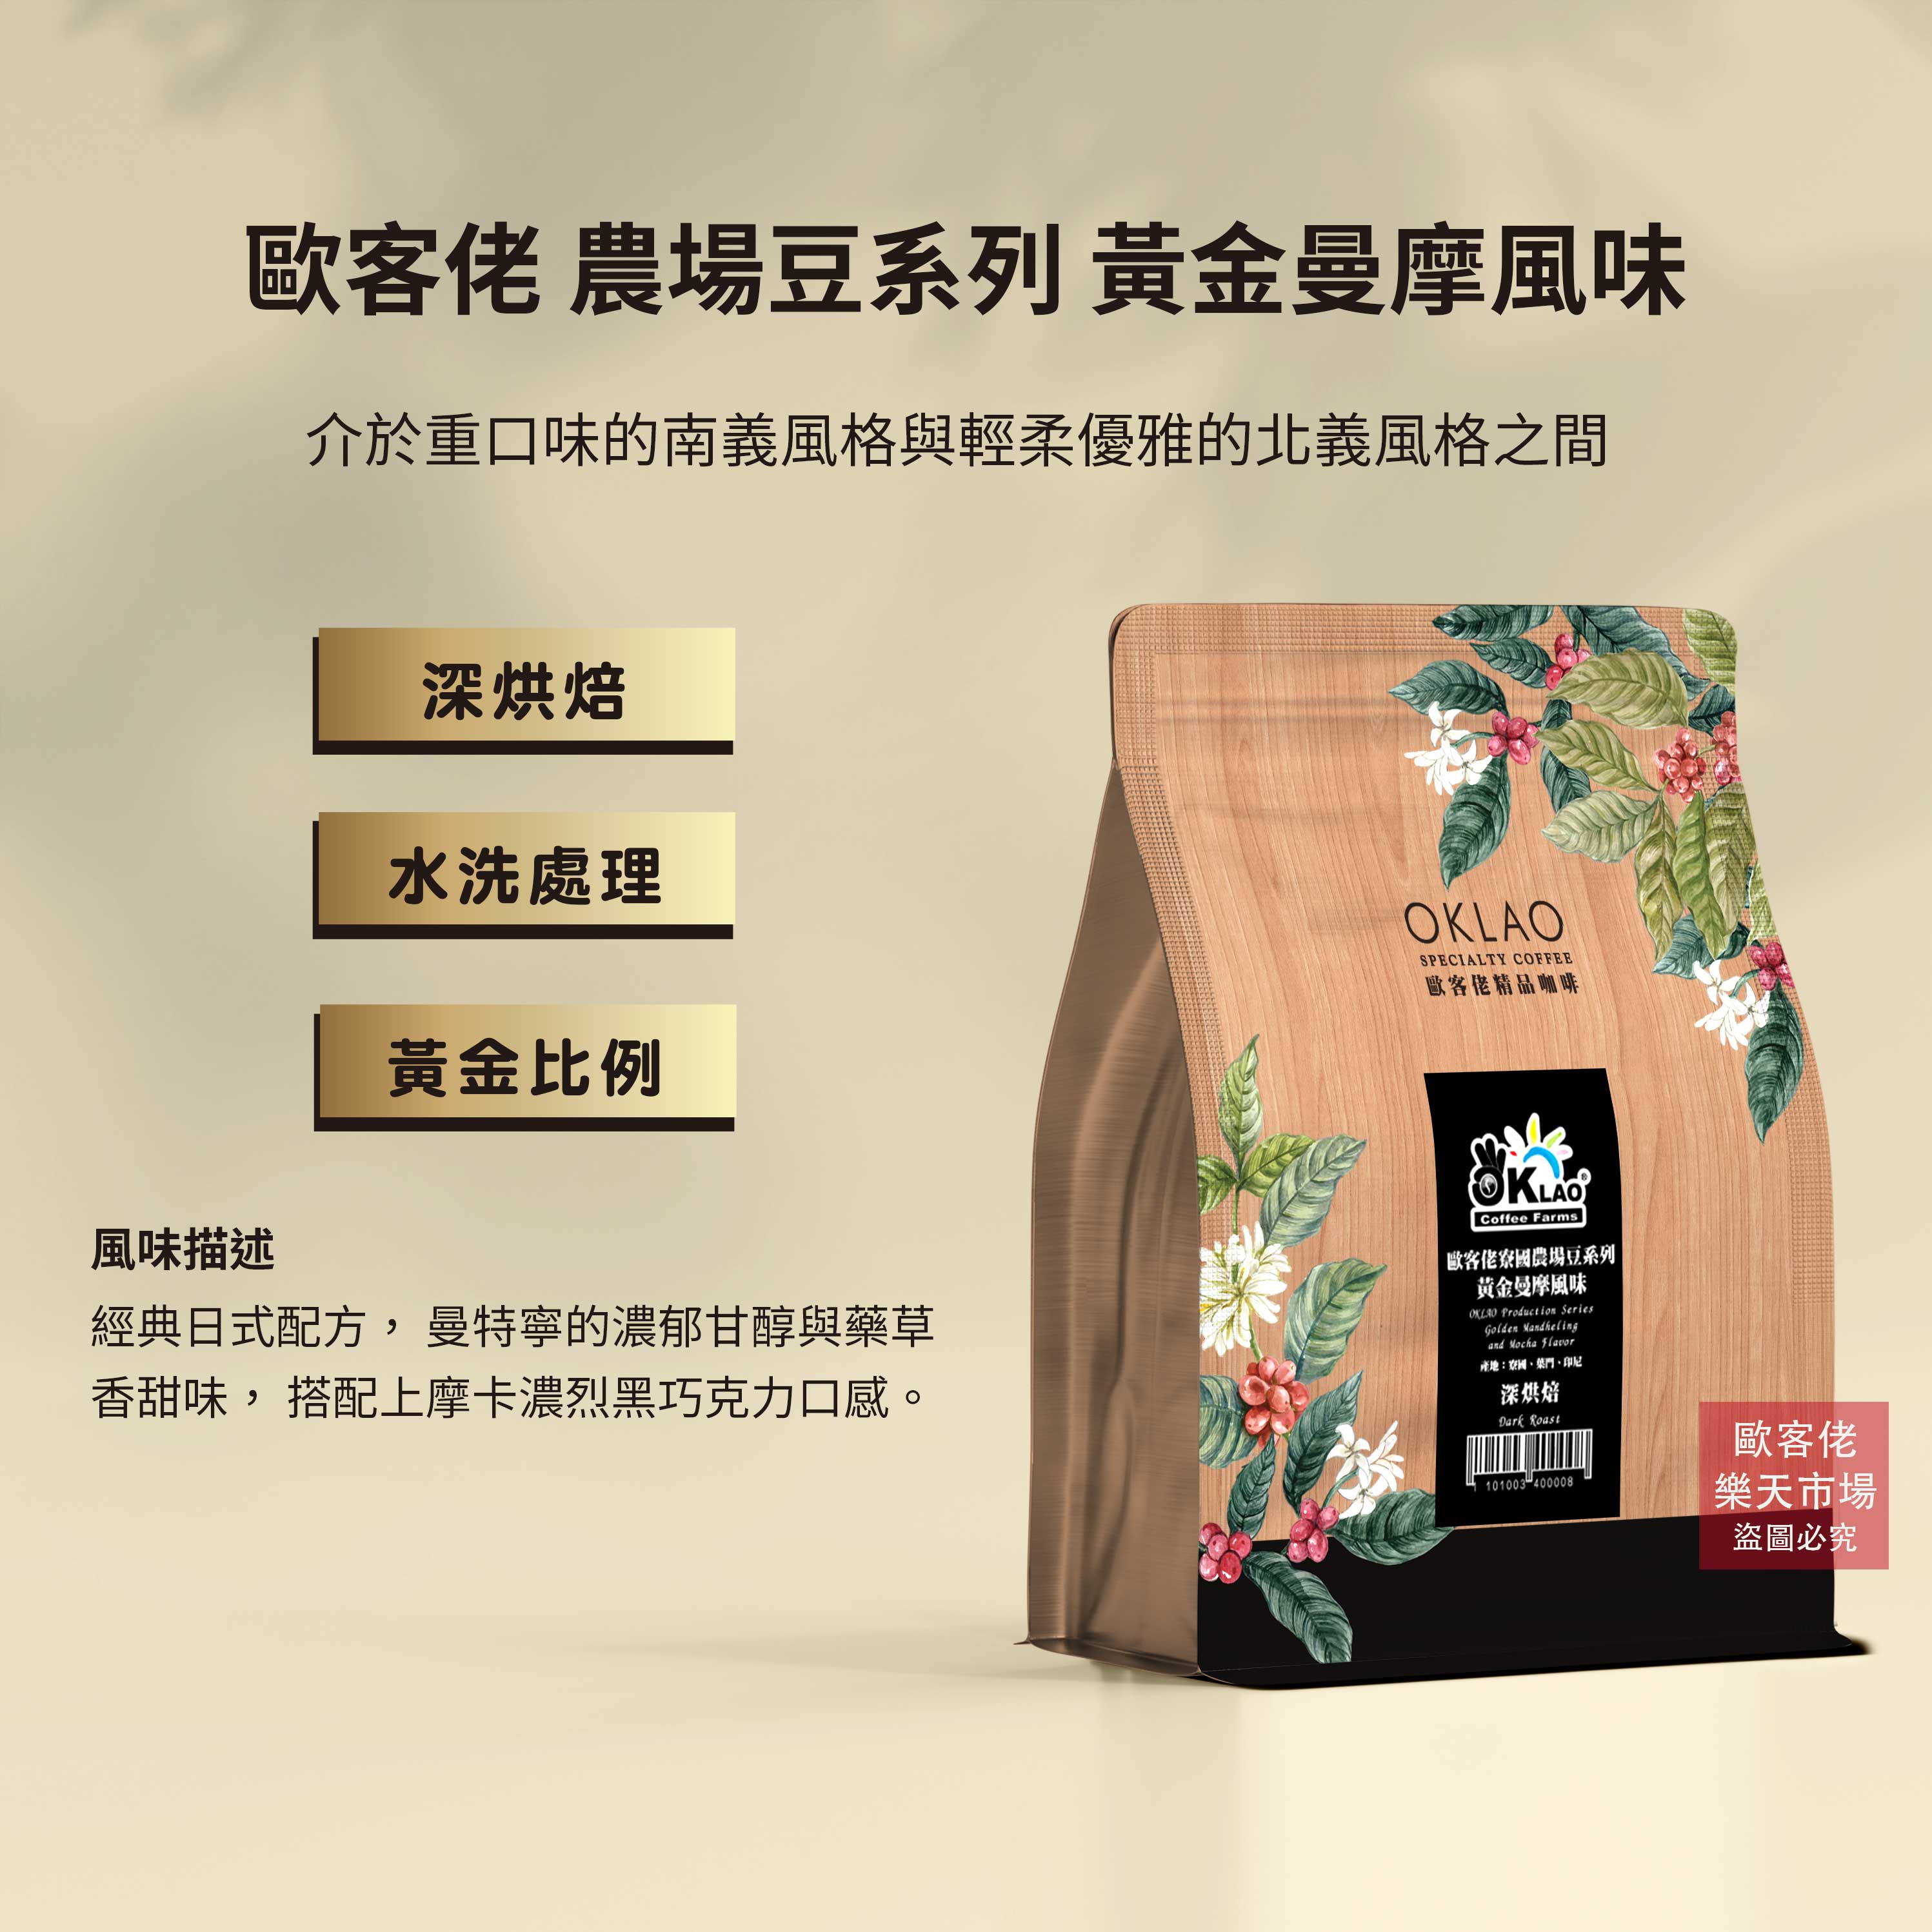 【歐客佬】黃金曼摩風味 咖啡豆 (半磅) 深烘焙 (11010034)